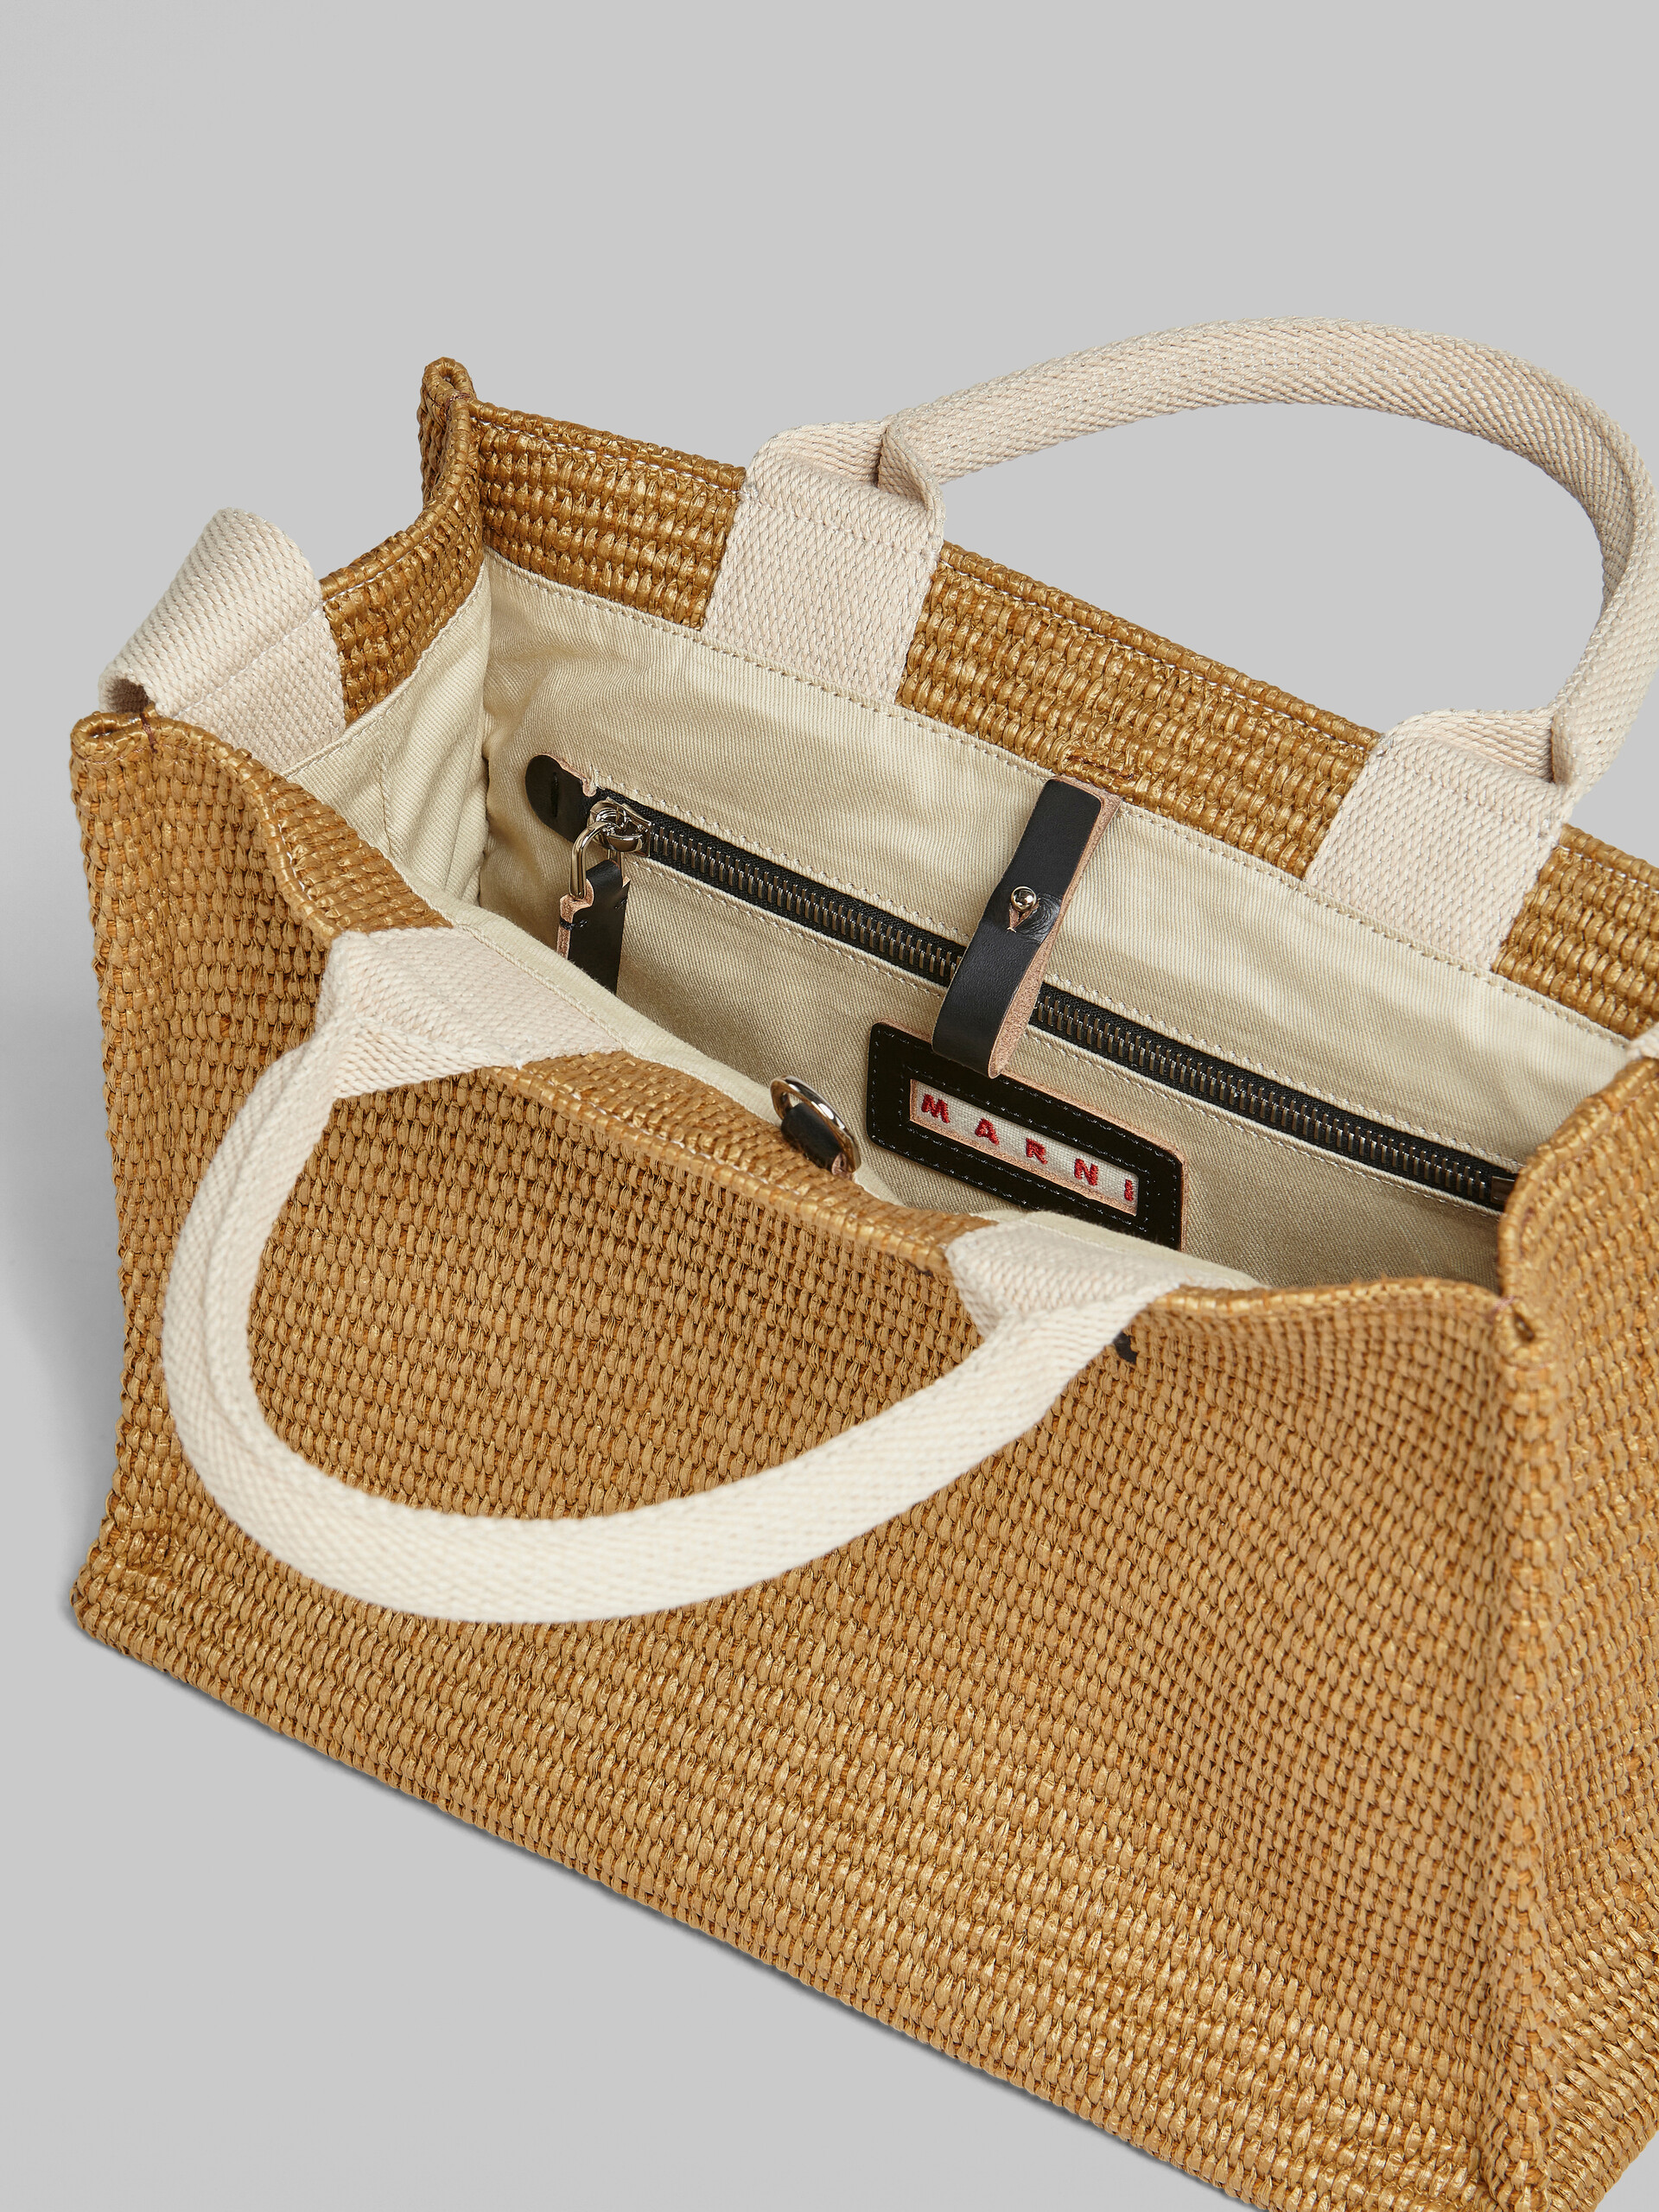 Tote Bag Piccola in rafia naturale - Borse shopping - Image 4